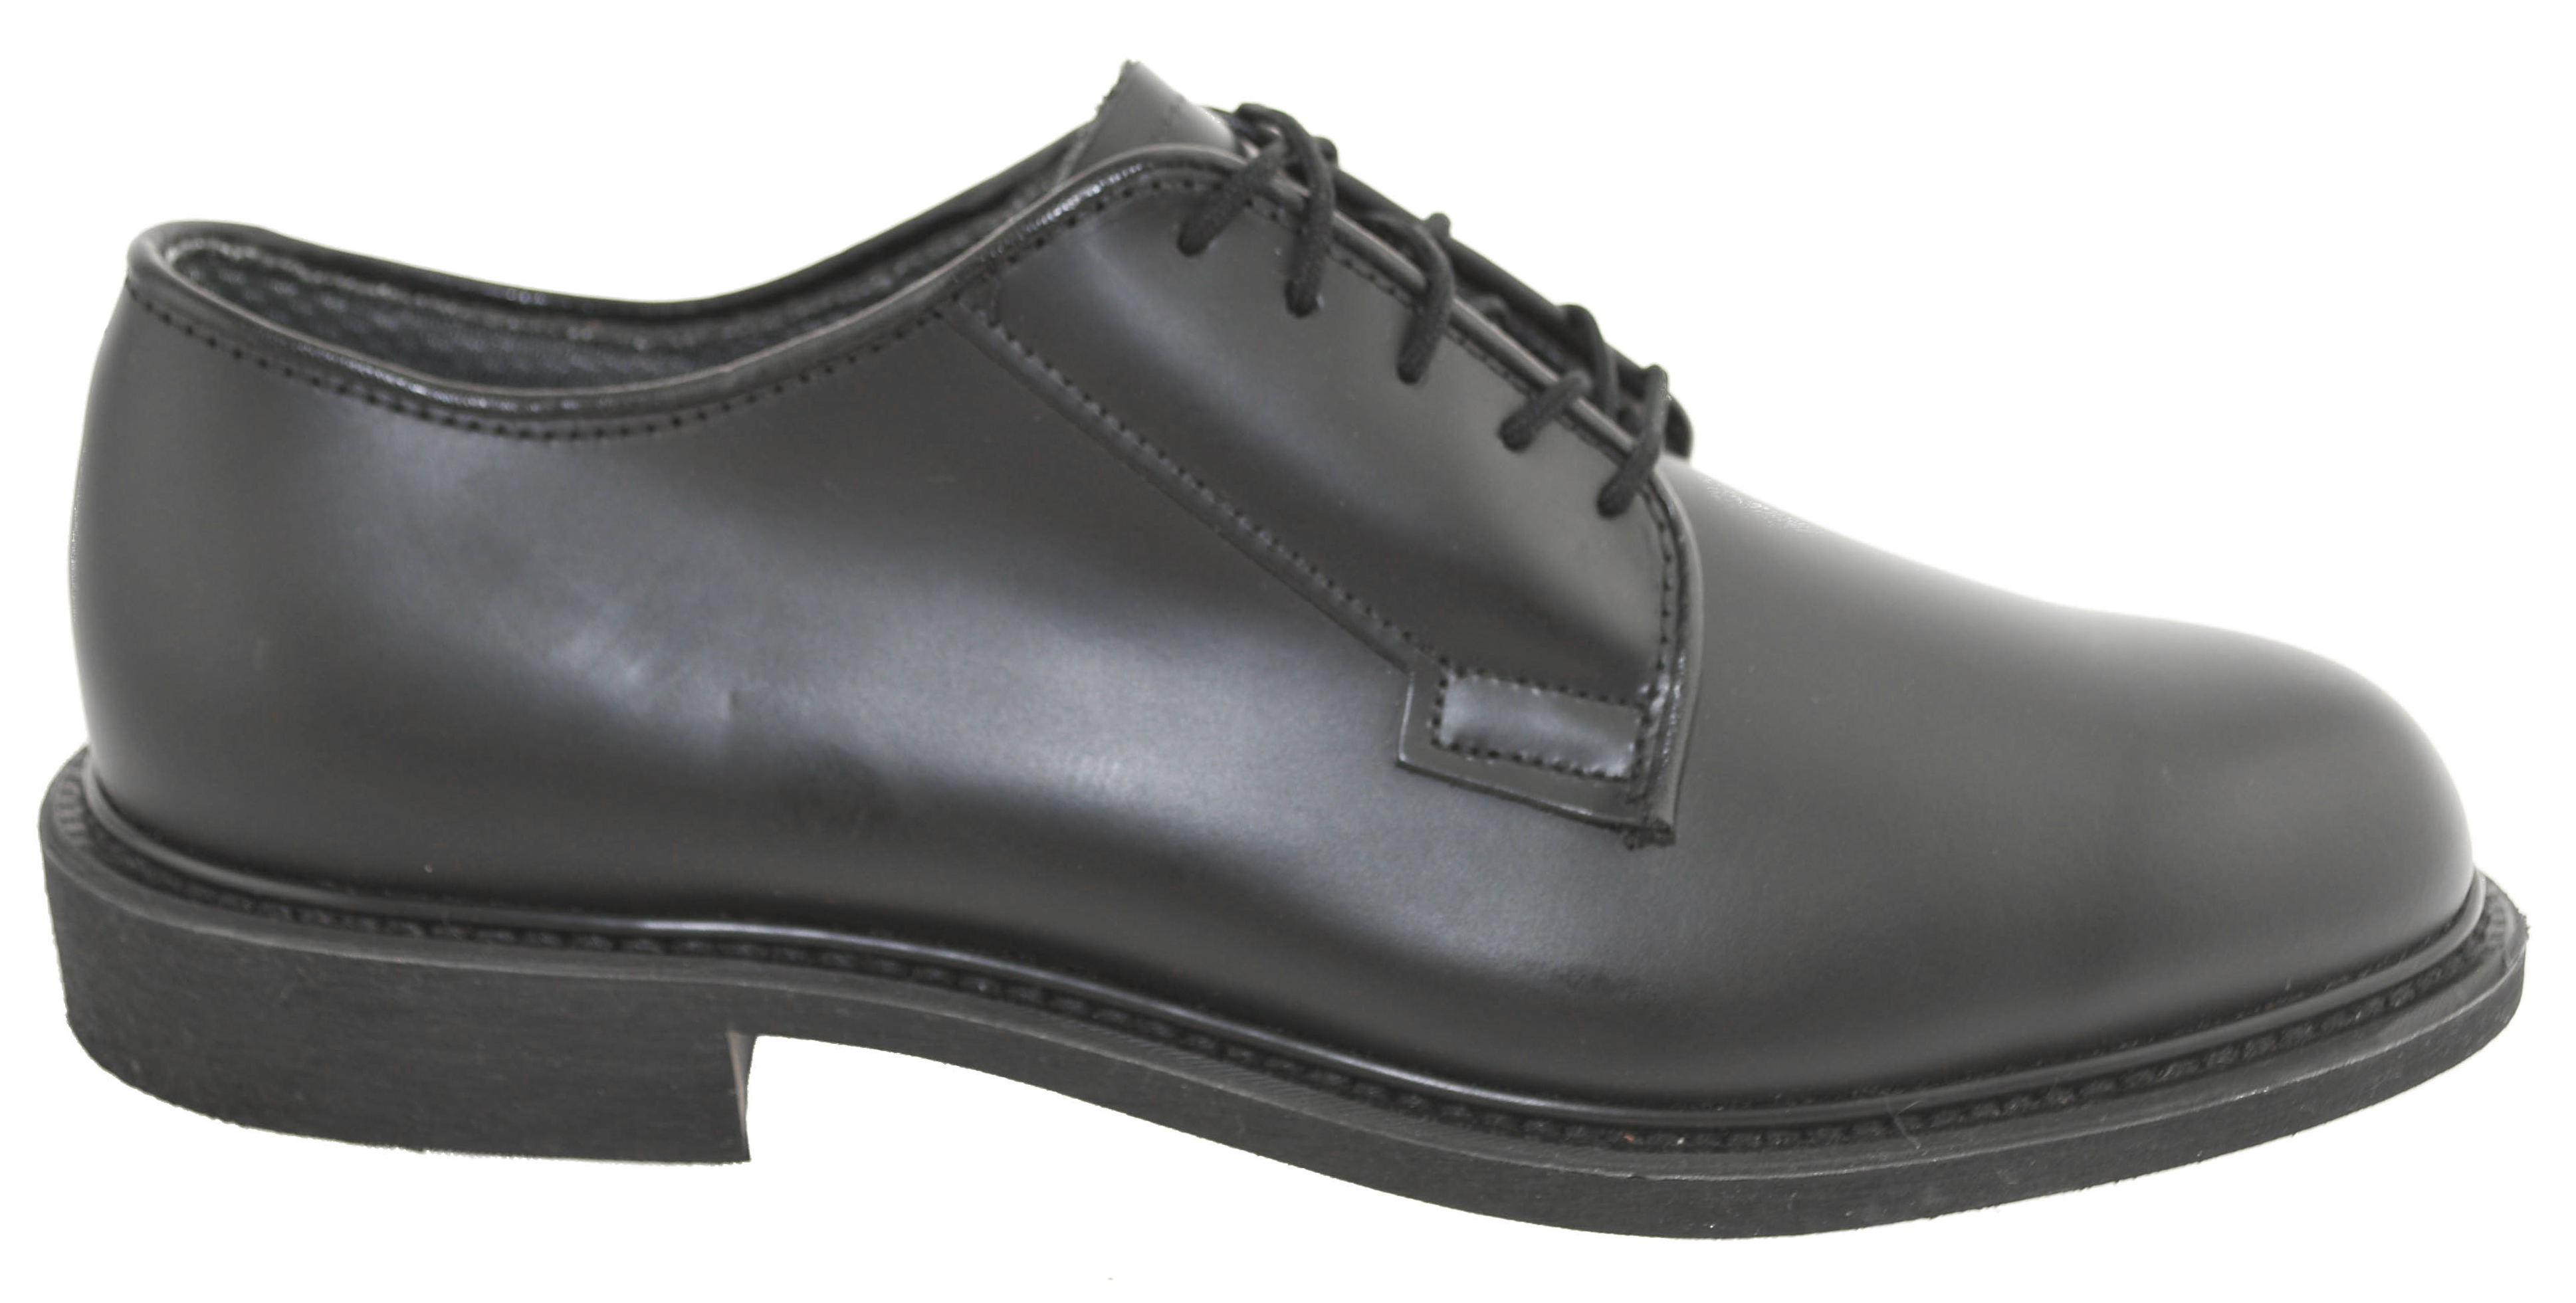 Bates Men's Leather Uniform Oxford Shoes Black 00968